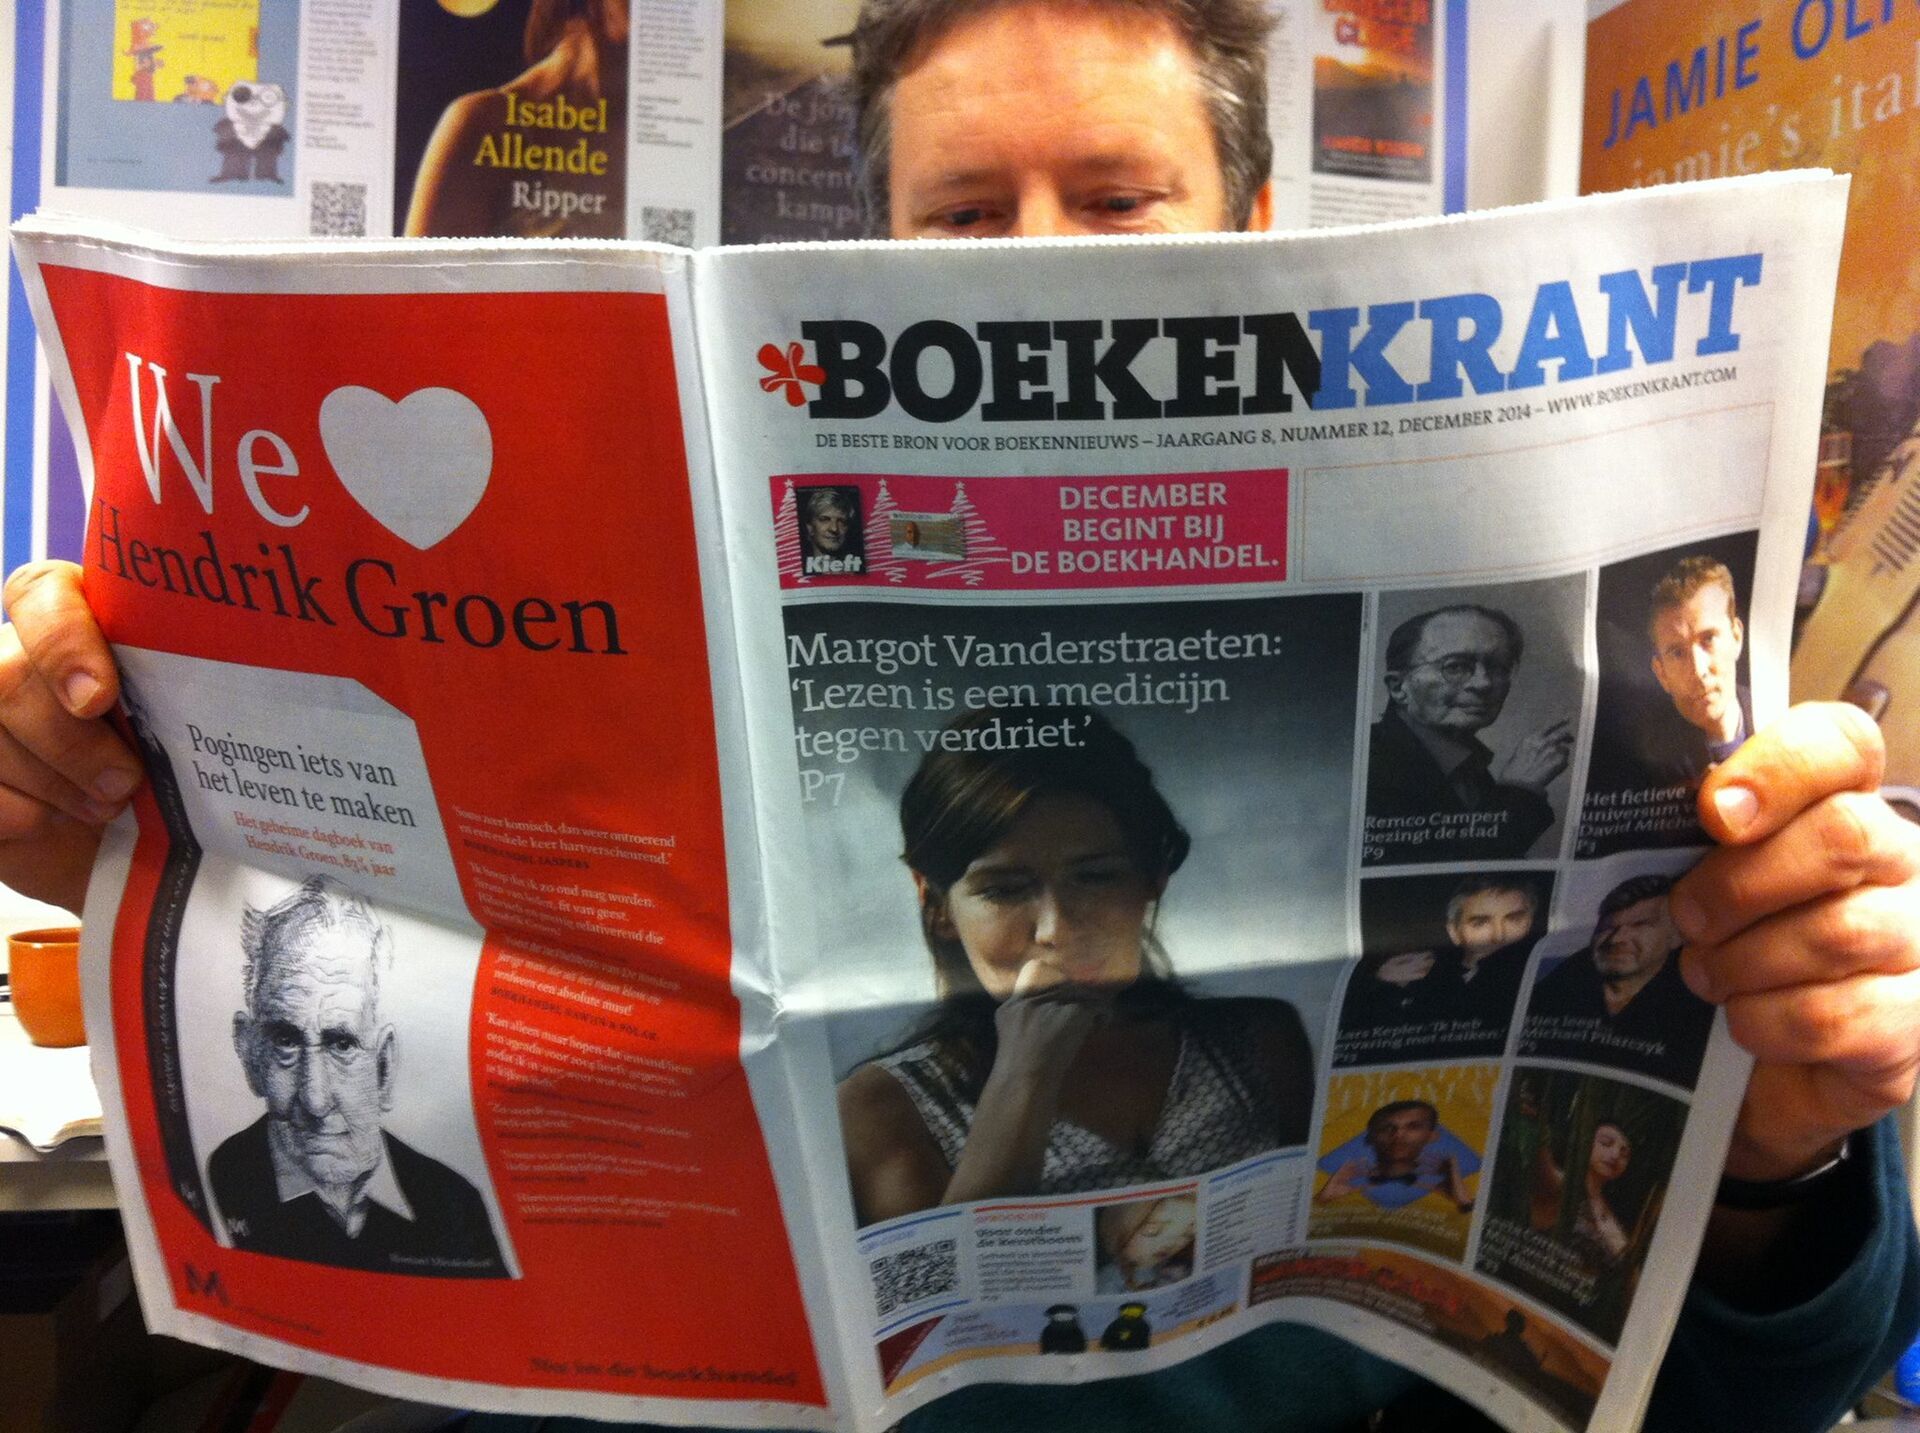 Nu verschenen: Boekenkrant editie 1 december 2014 met Margot Vanderstraeten, Remco Campert en David Mitchell